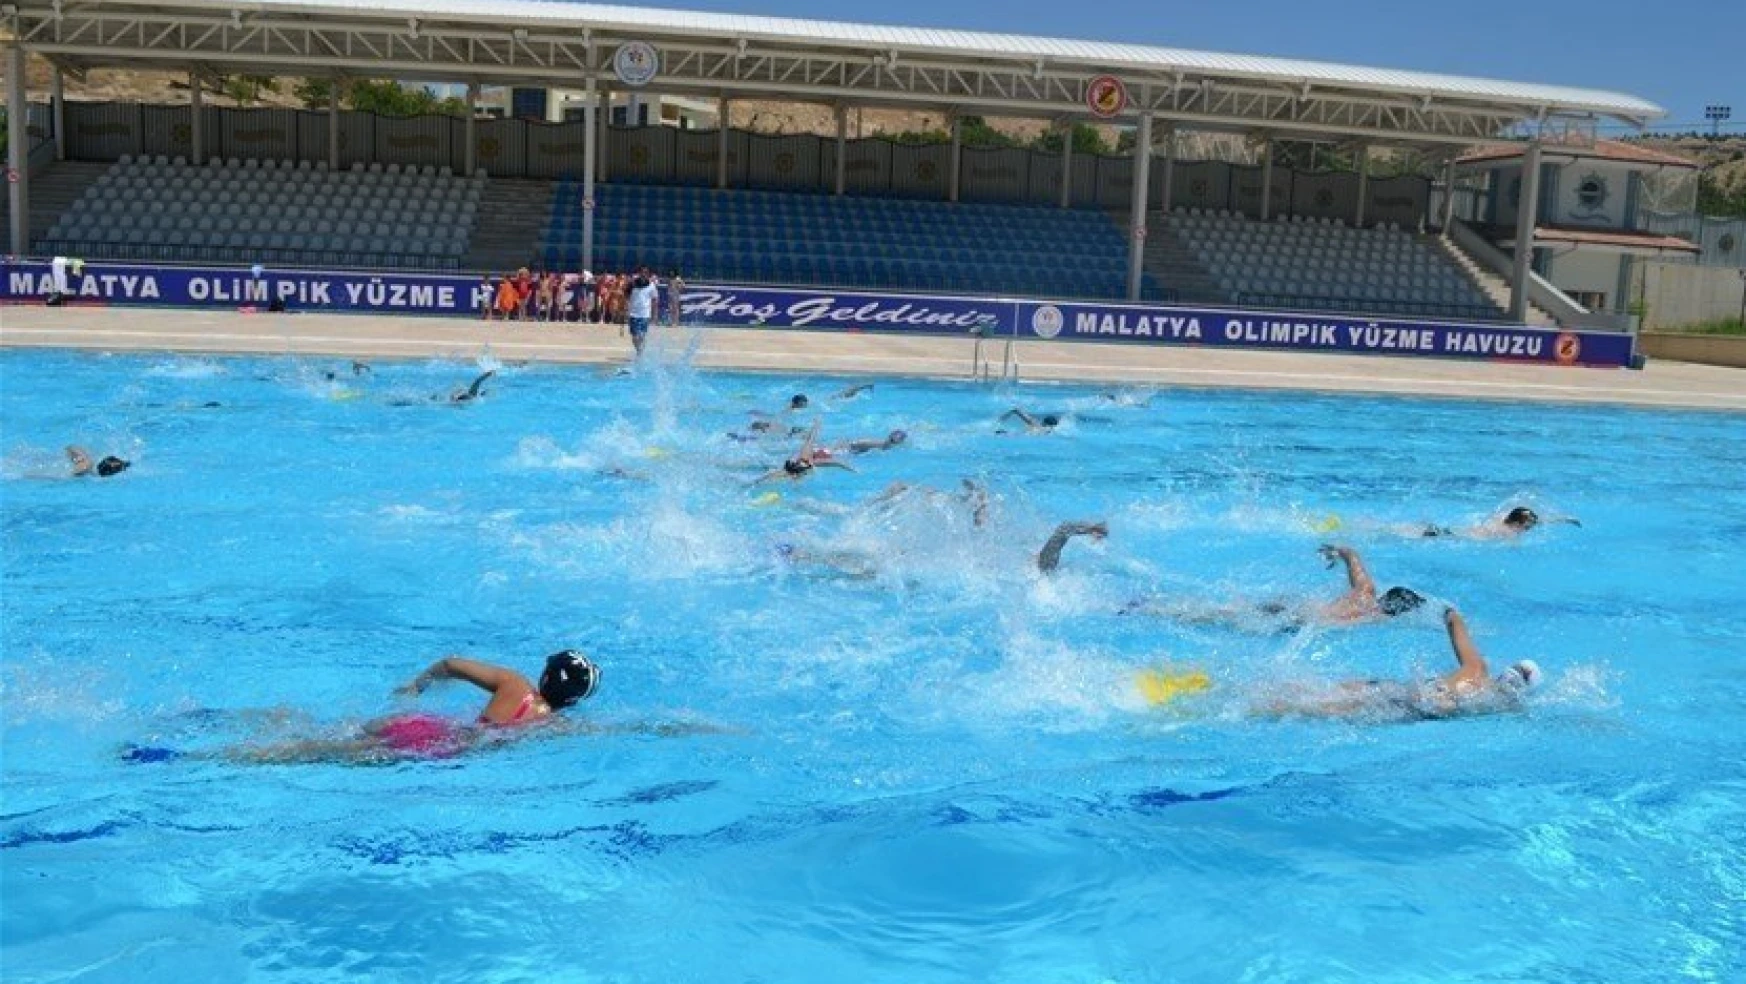 Olimpik Açık Havuz Bayram'da açık
